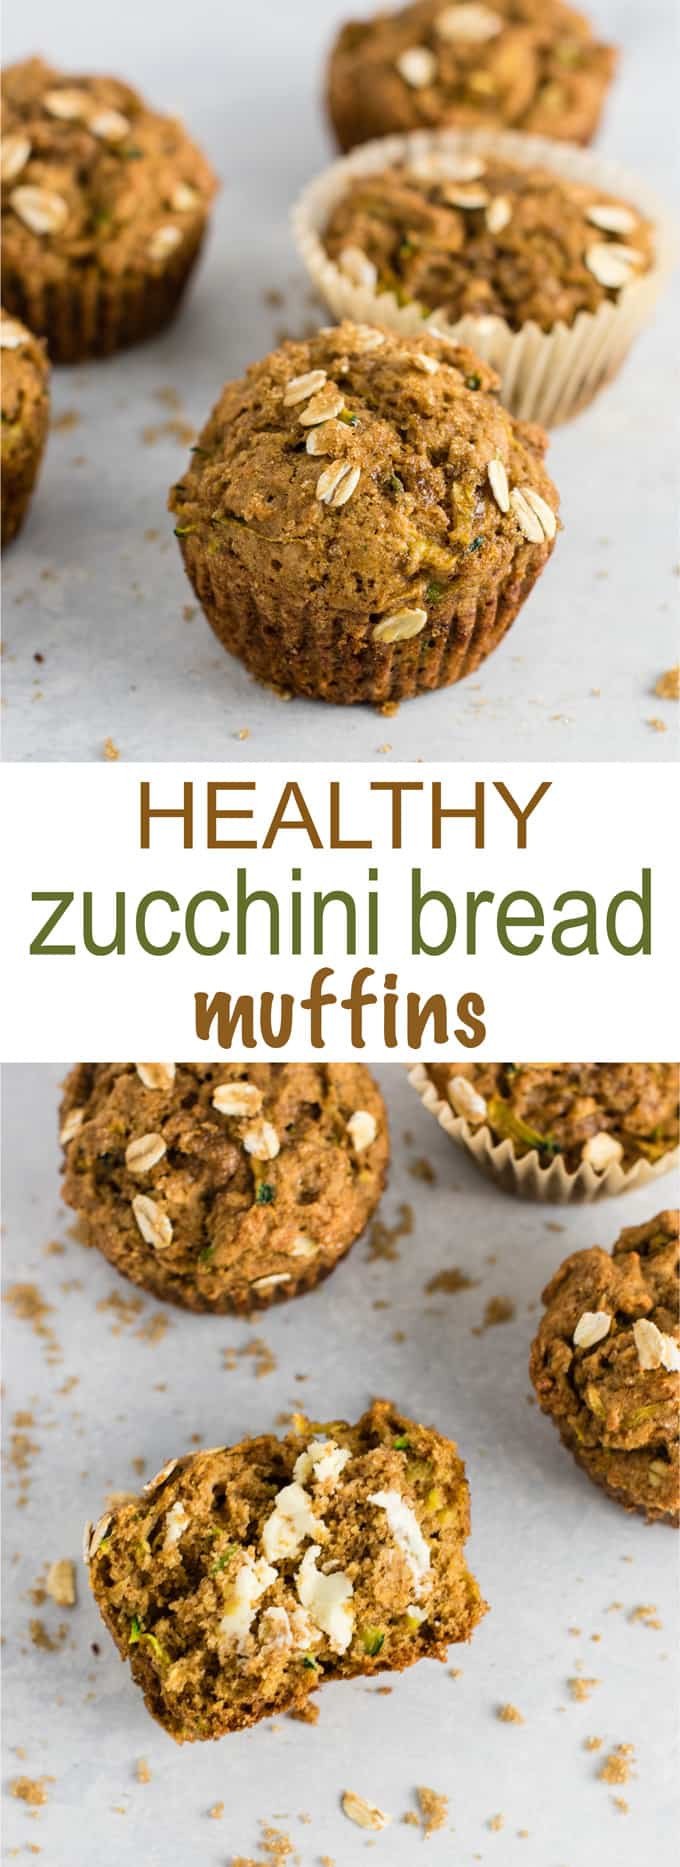 Zucchini Muffins Healthy
 Healthy Zucchini Bread Muffins Recipe Build Your Bite